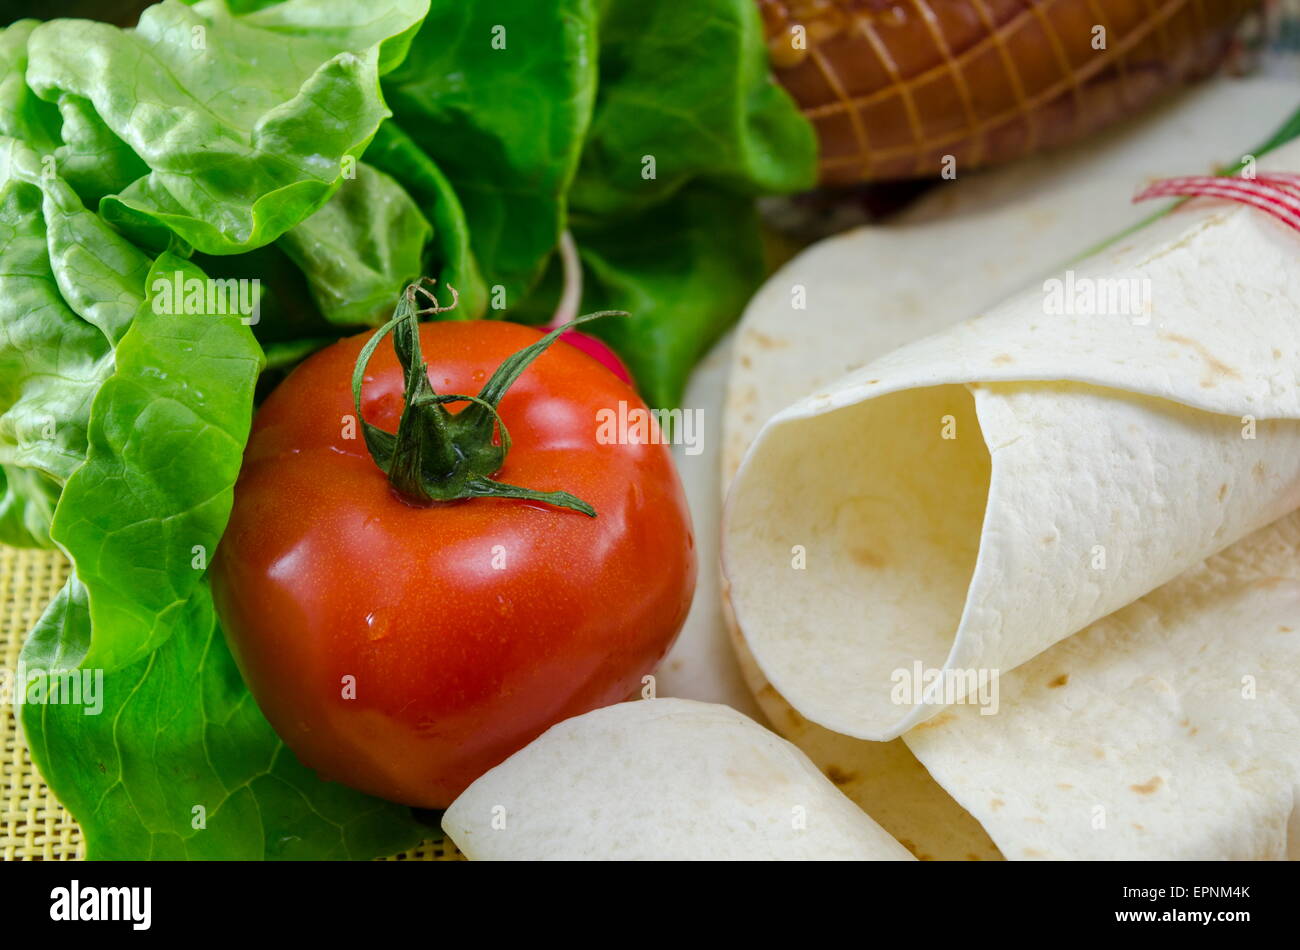 Svuotare tortillas legate con un nastro rosso su un tavolo con il pomodoro, la lattuga e prosciutto Foto Stock